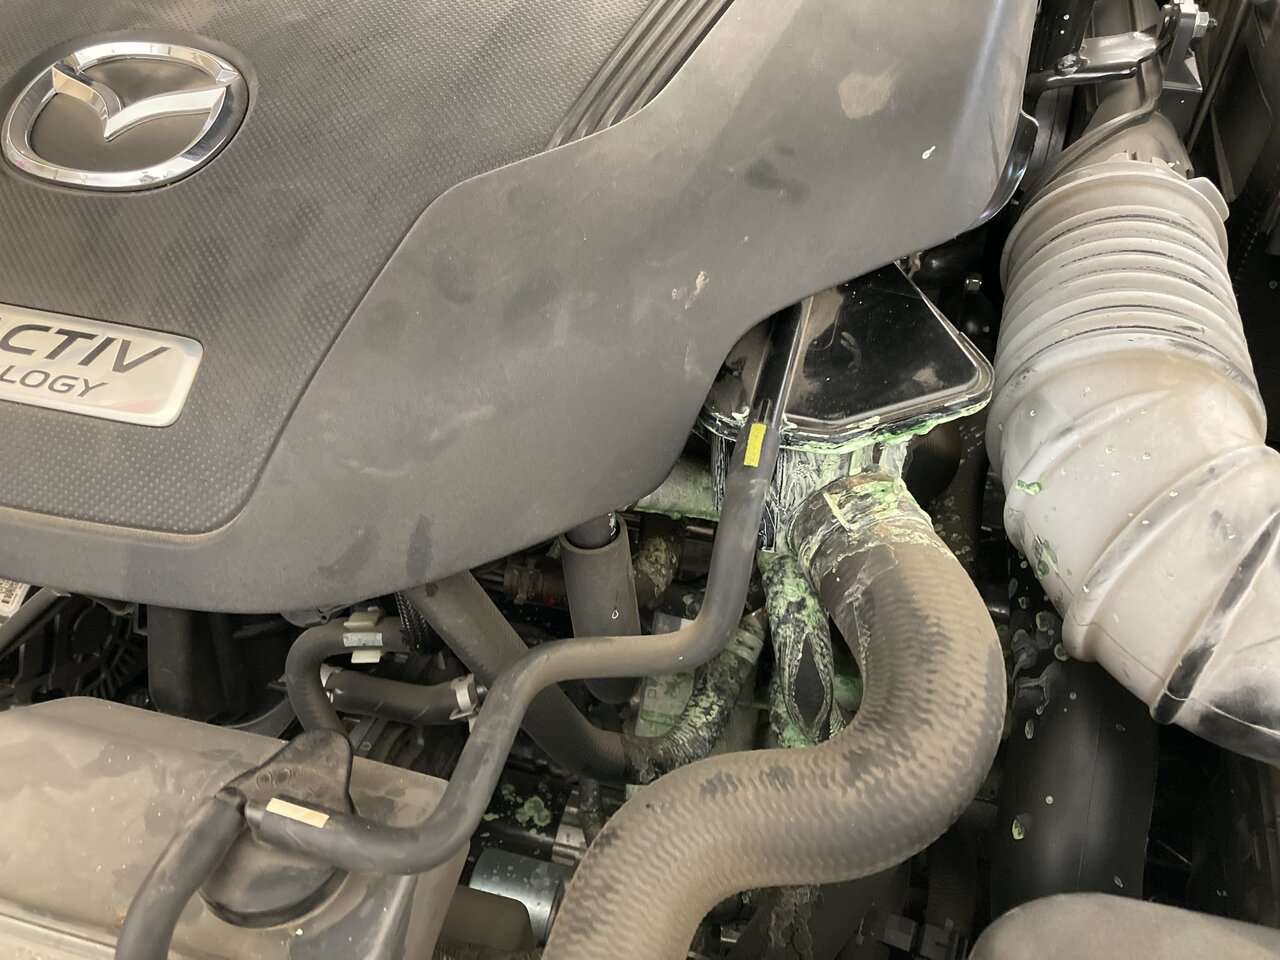 Mazda coolant leak 1.JPG